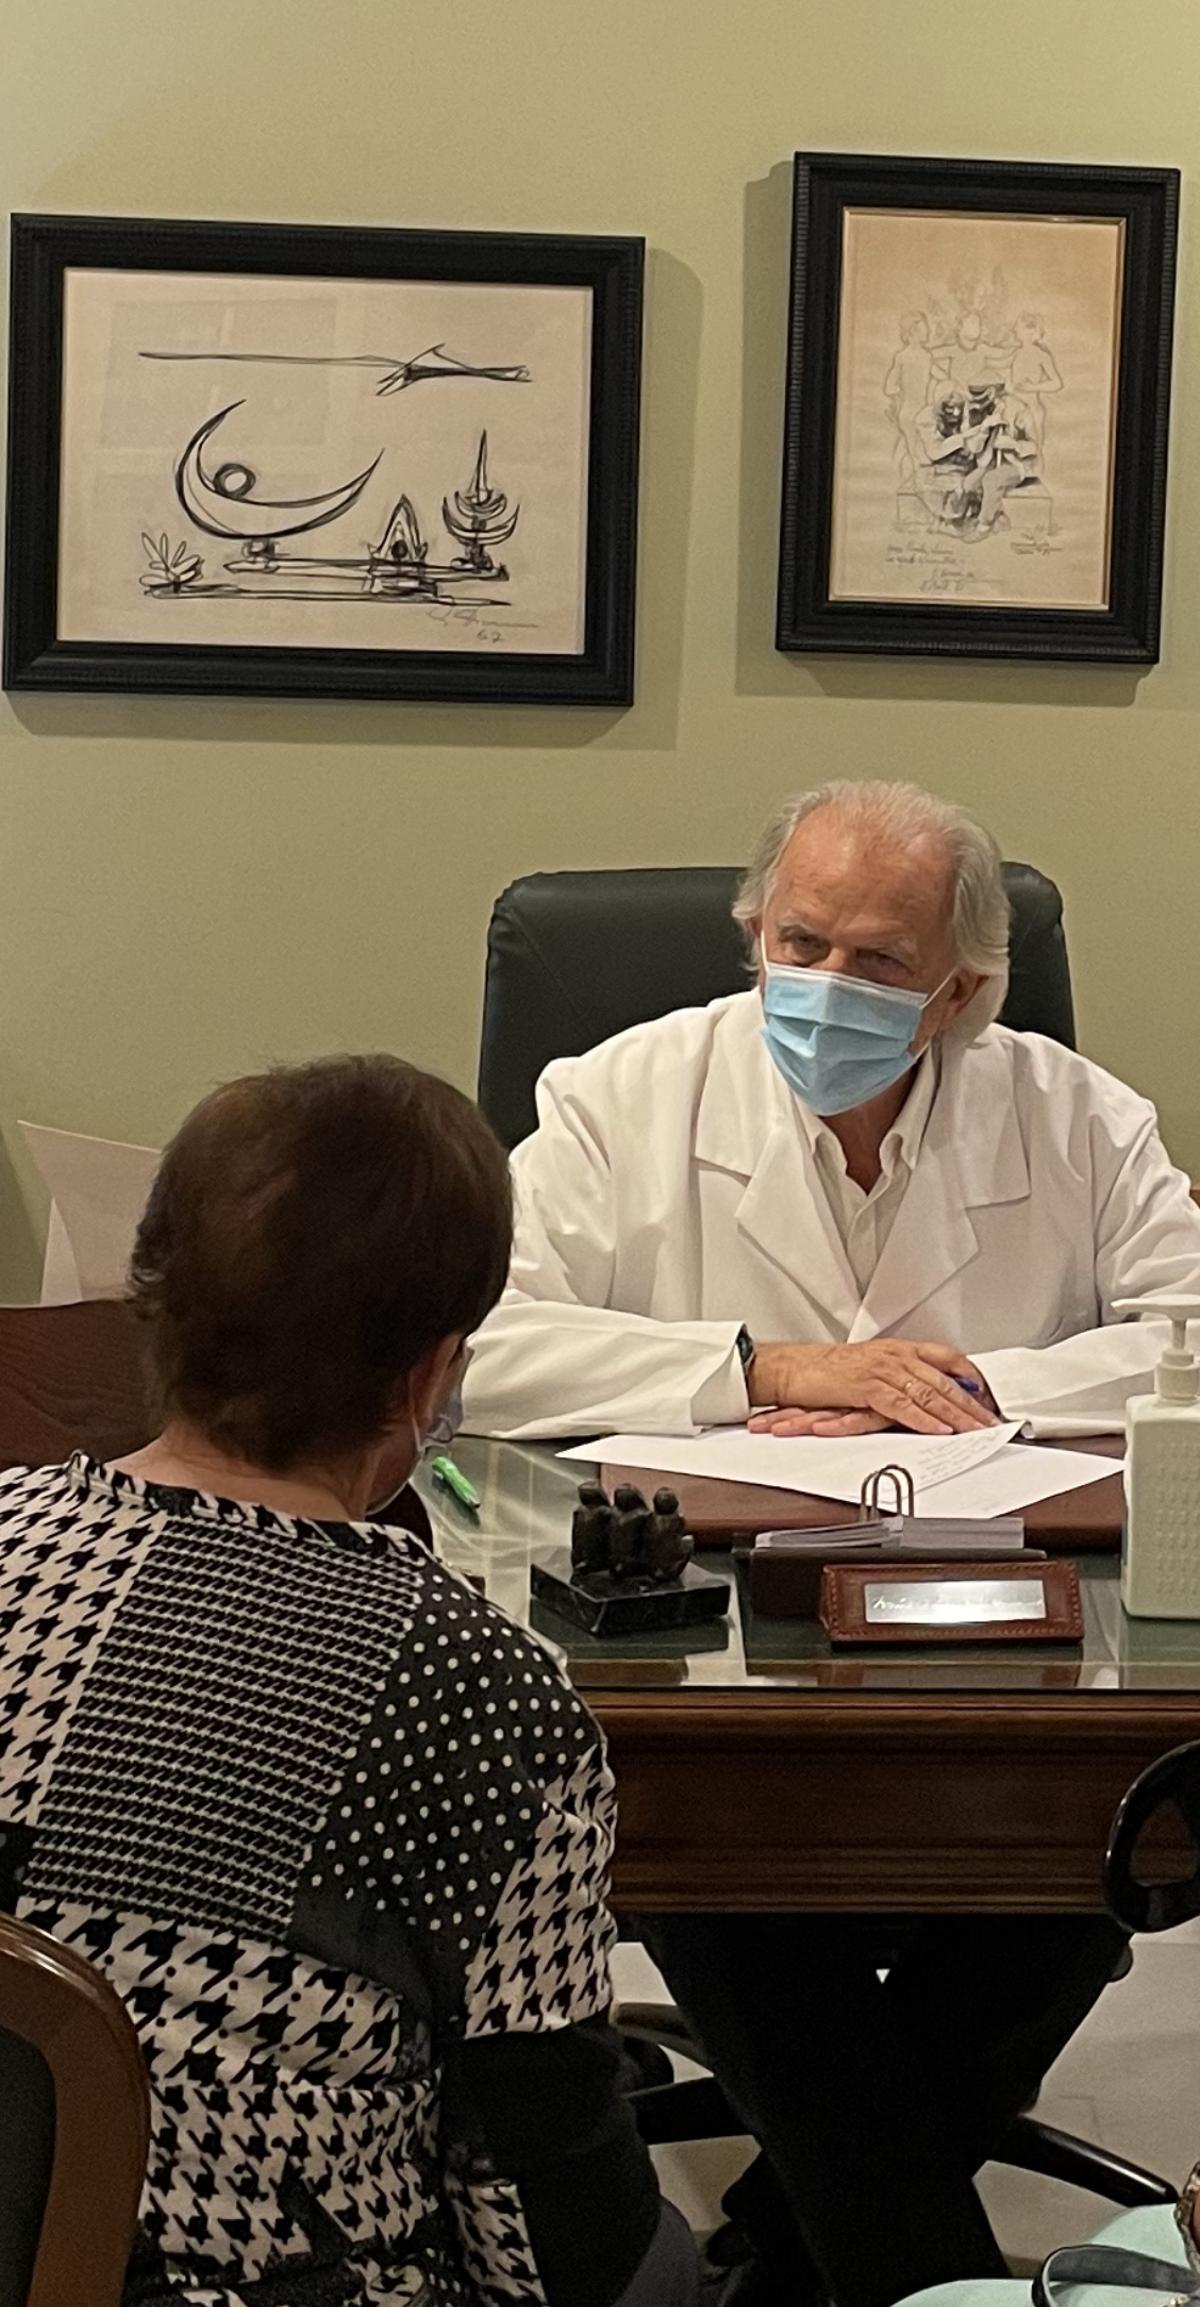 Atendiendo a una paciente en su consulta, durante la pandemia.